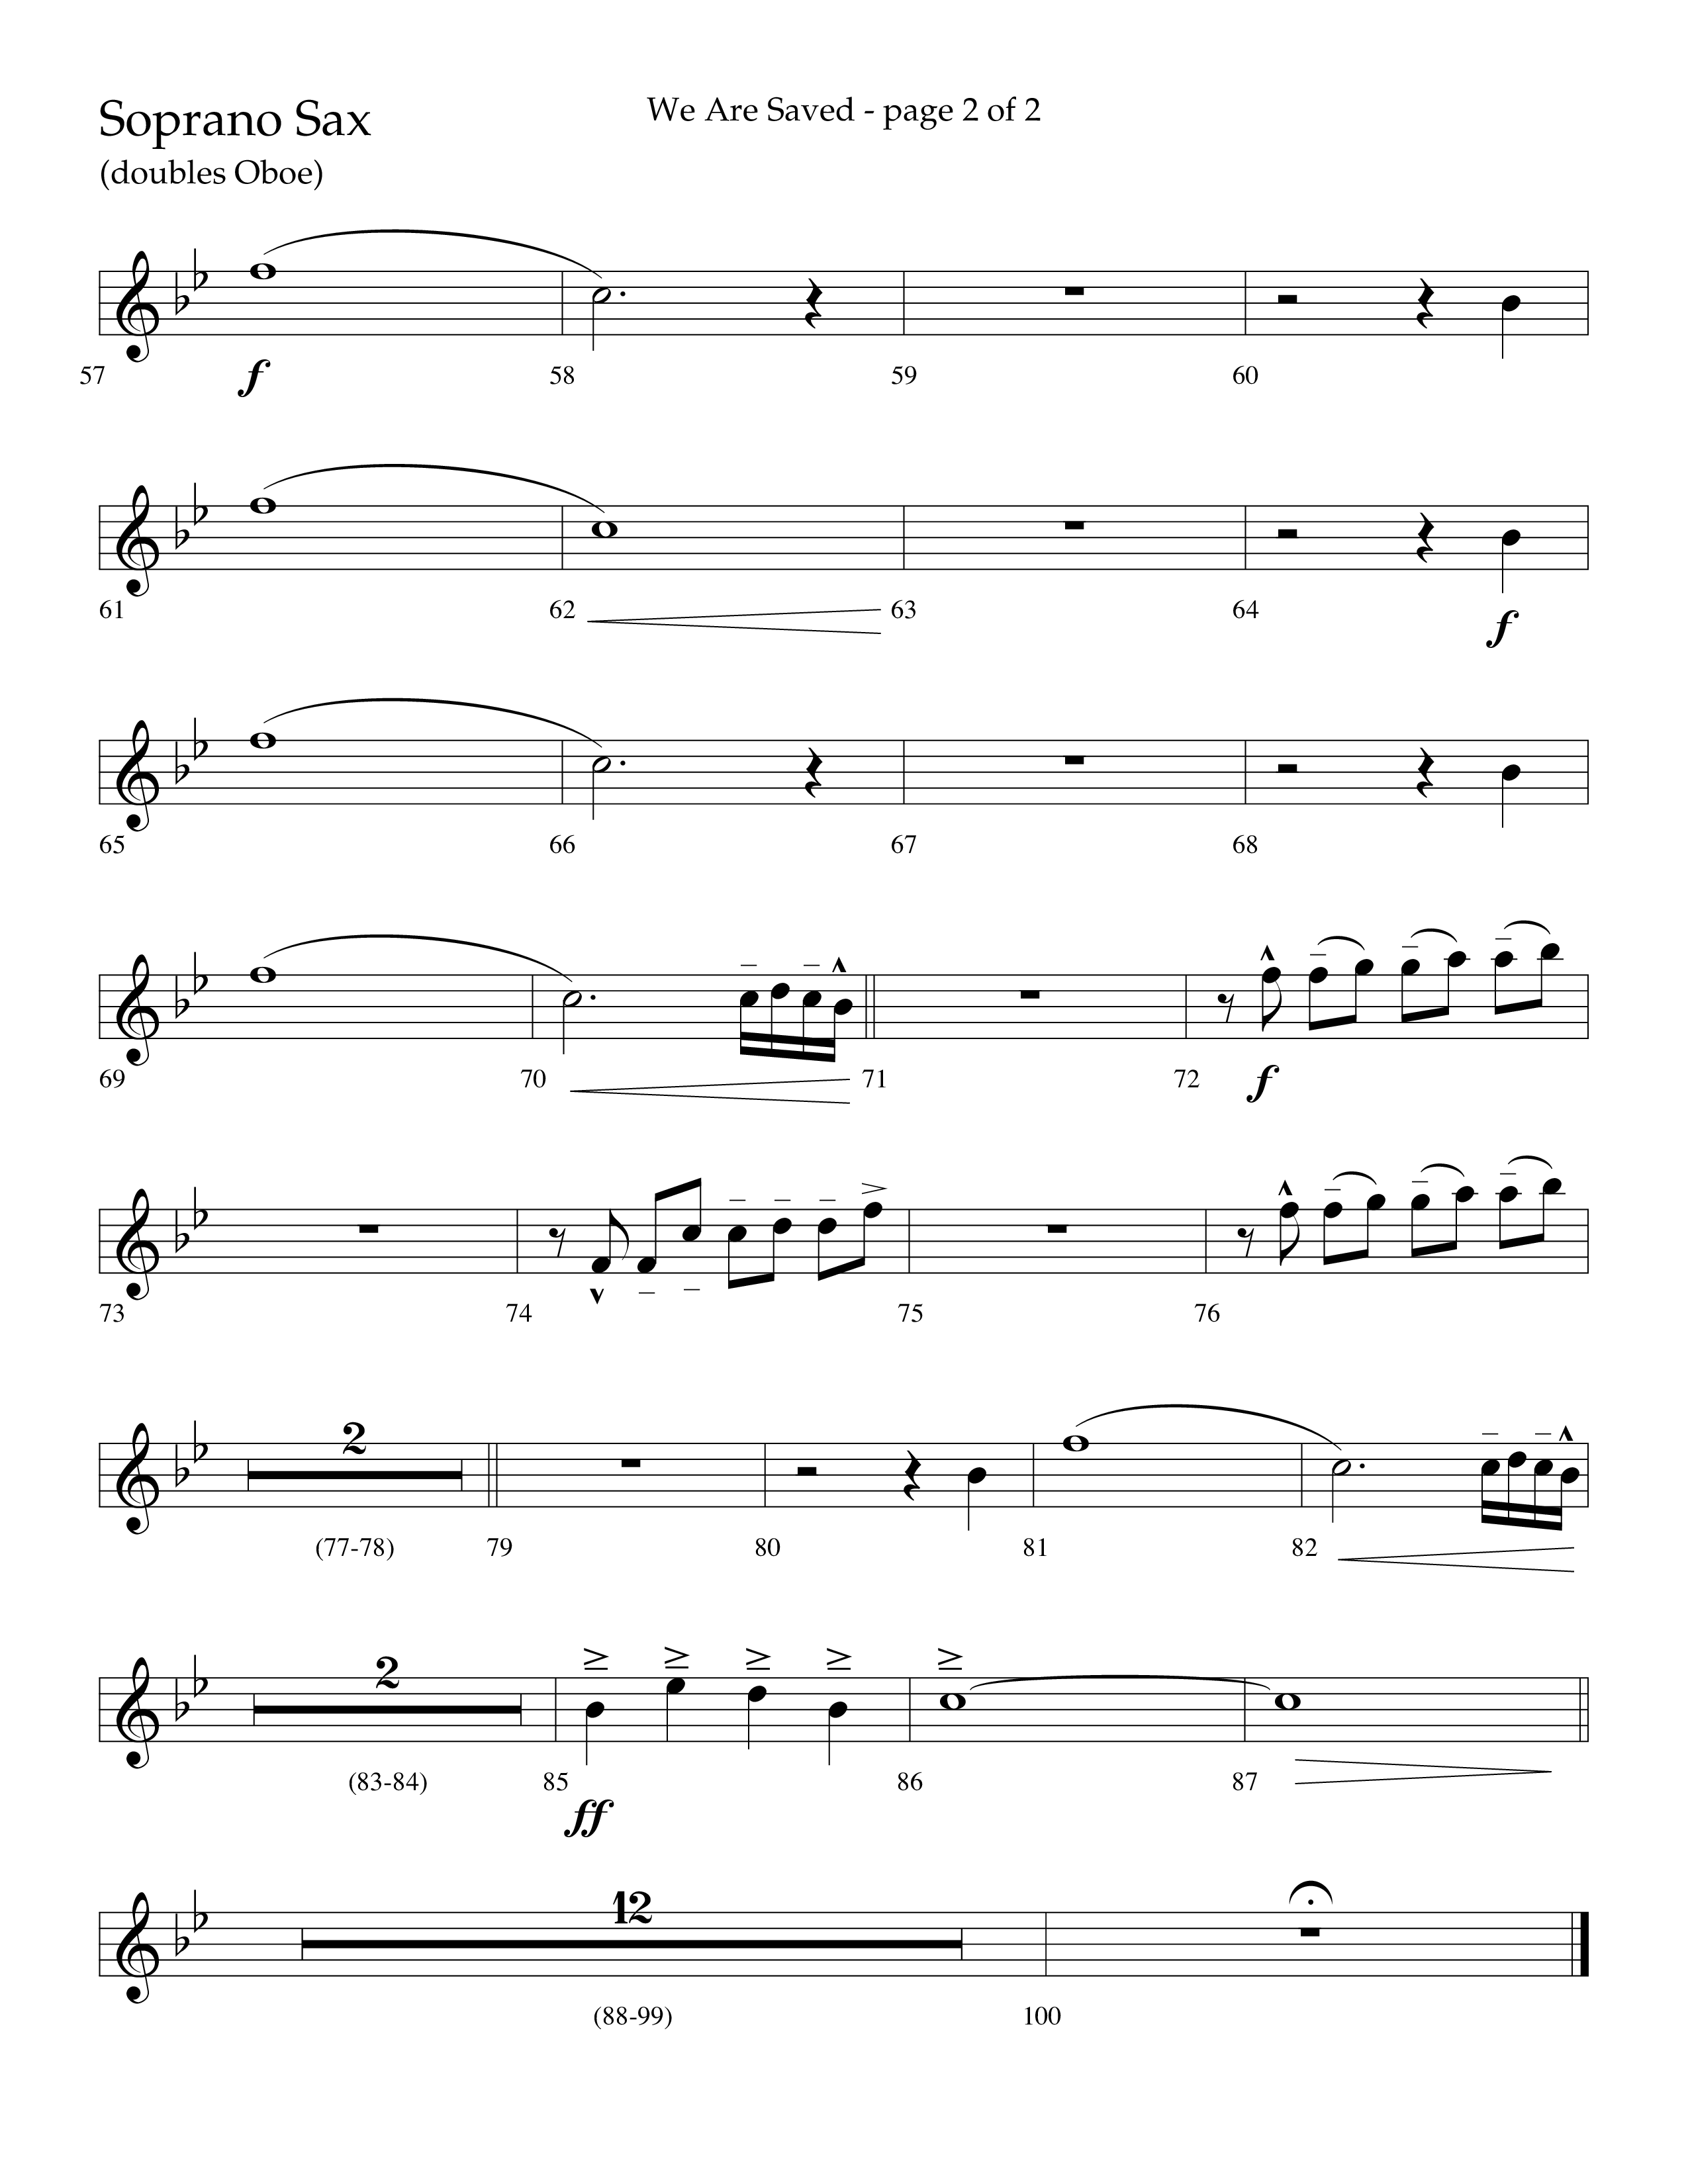 We Are Saved (Choral Anthem SATB) Soprano Sax (Lifeway Choral / Arr. Cliff Duren)